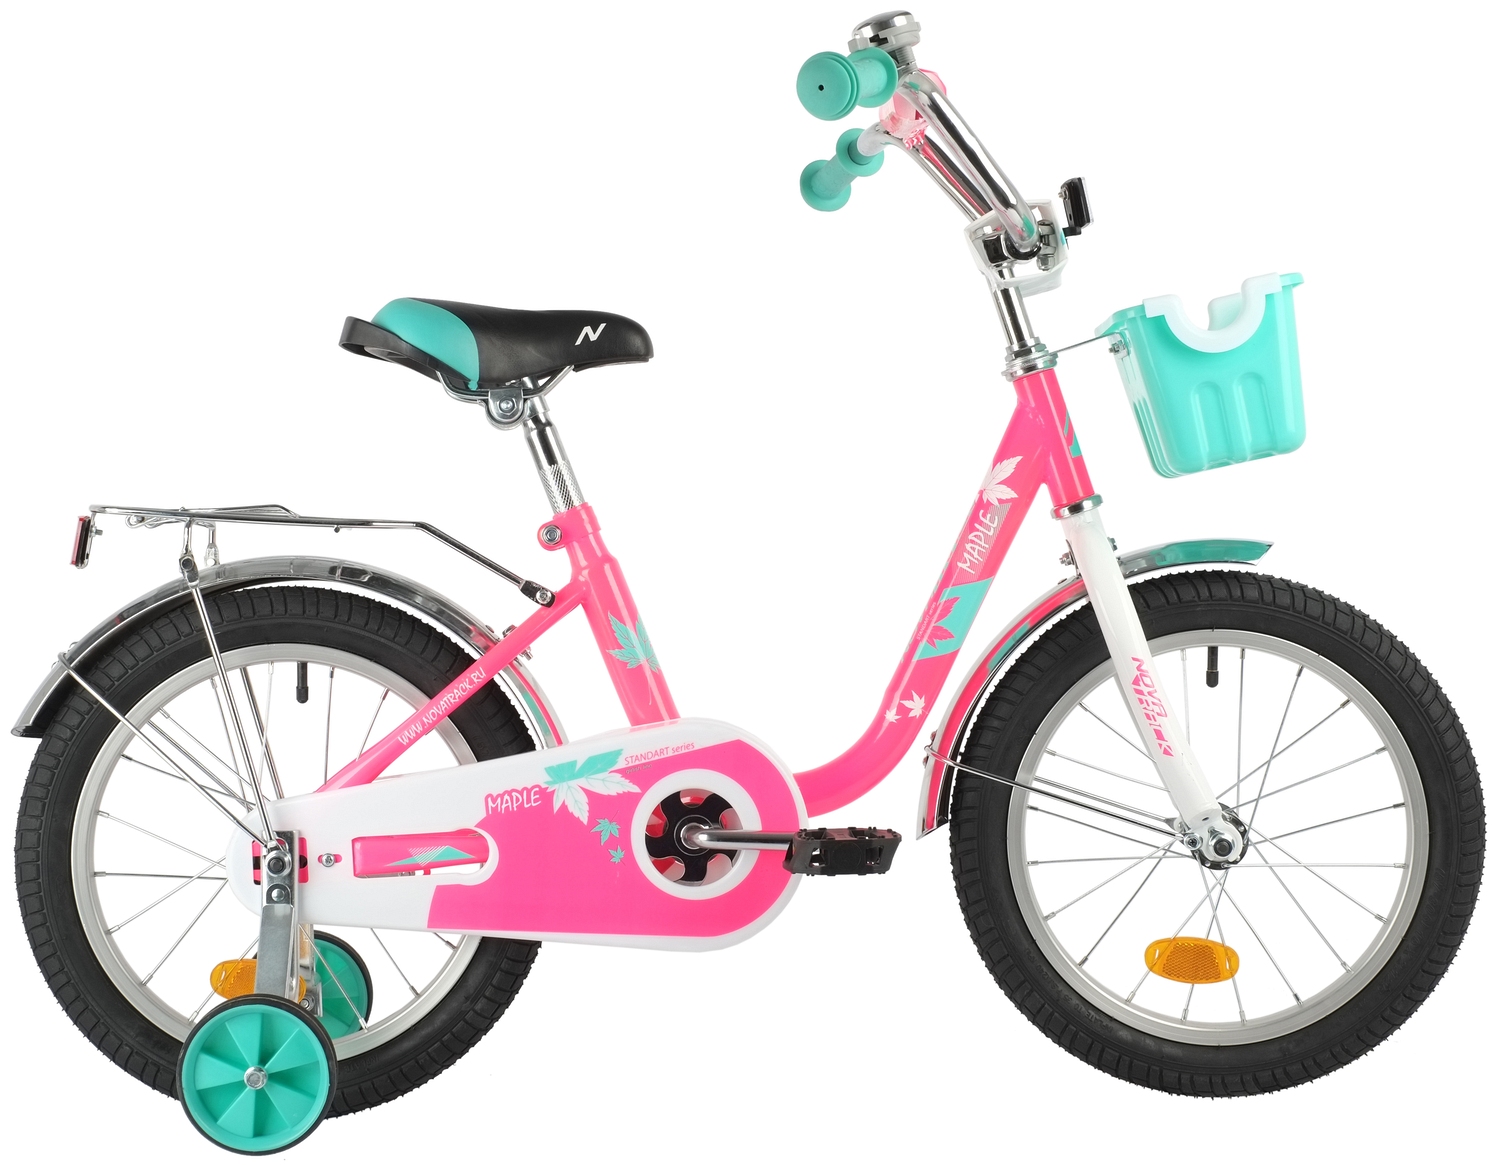  Отзывы о Детском велосипеде Novatrack Maple 16 2022